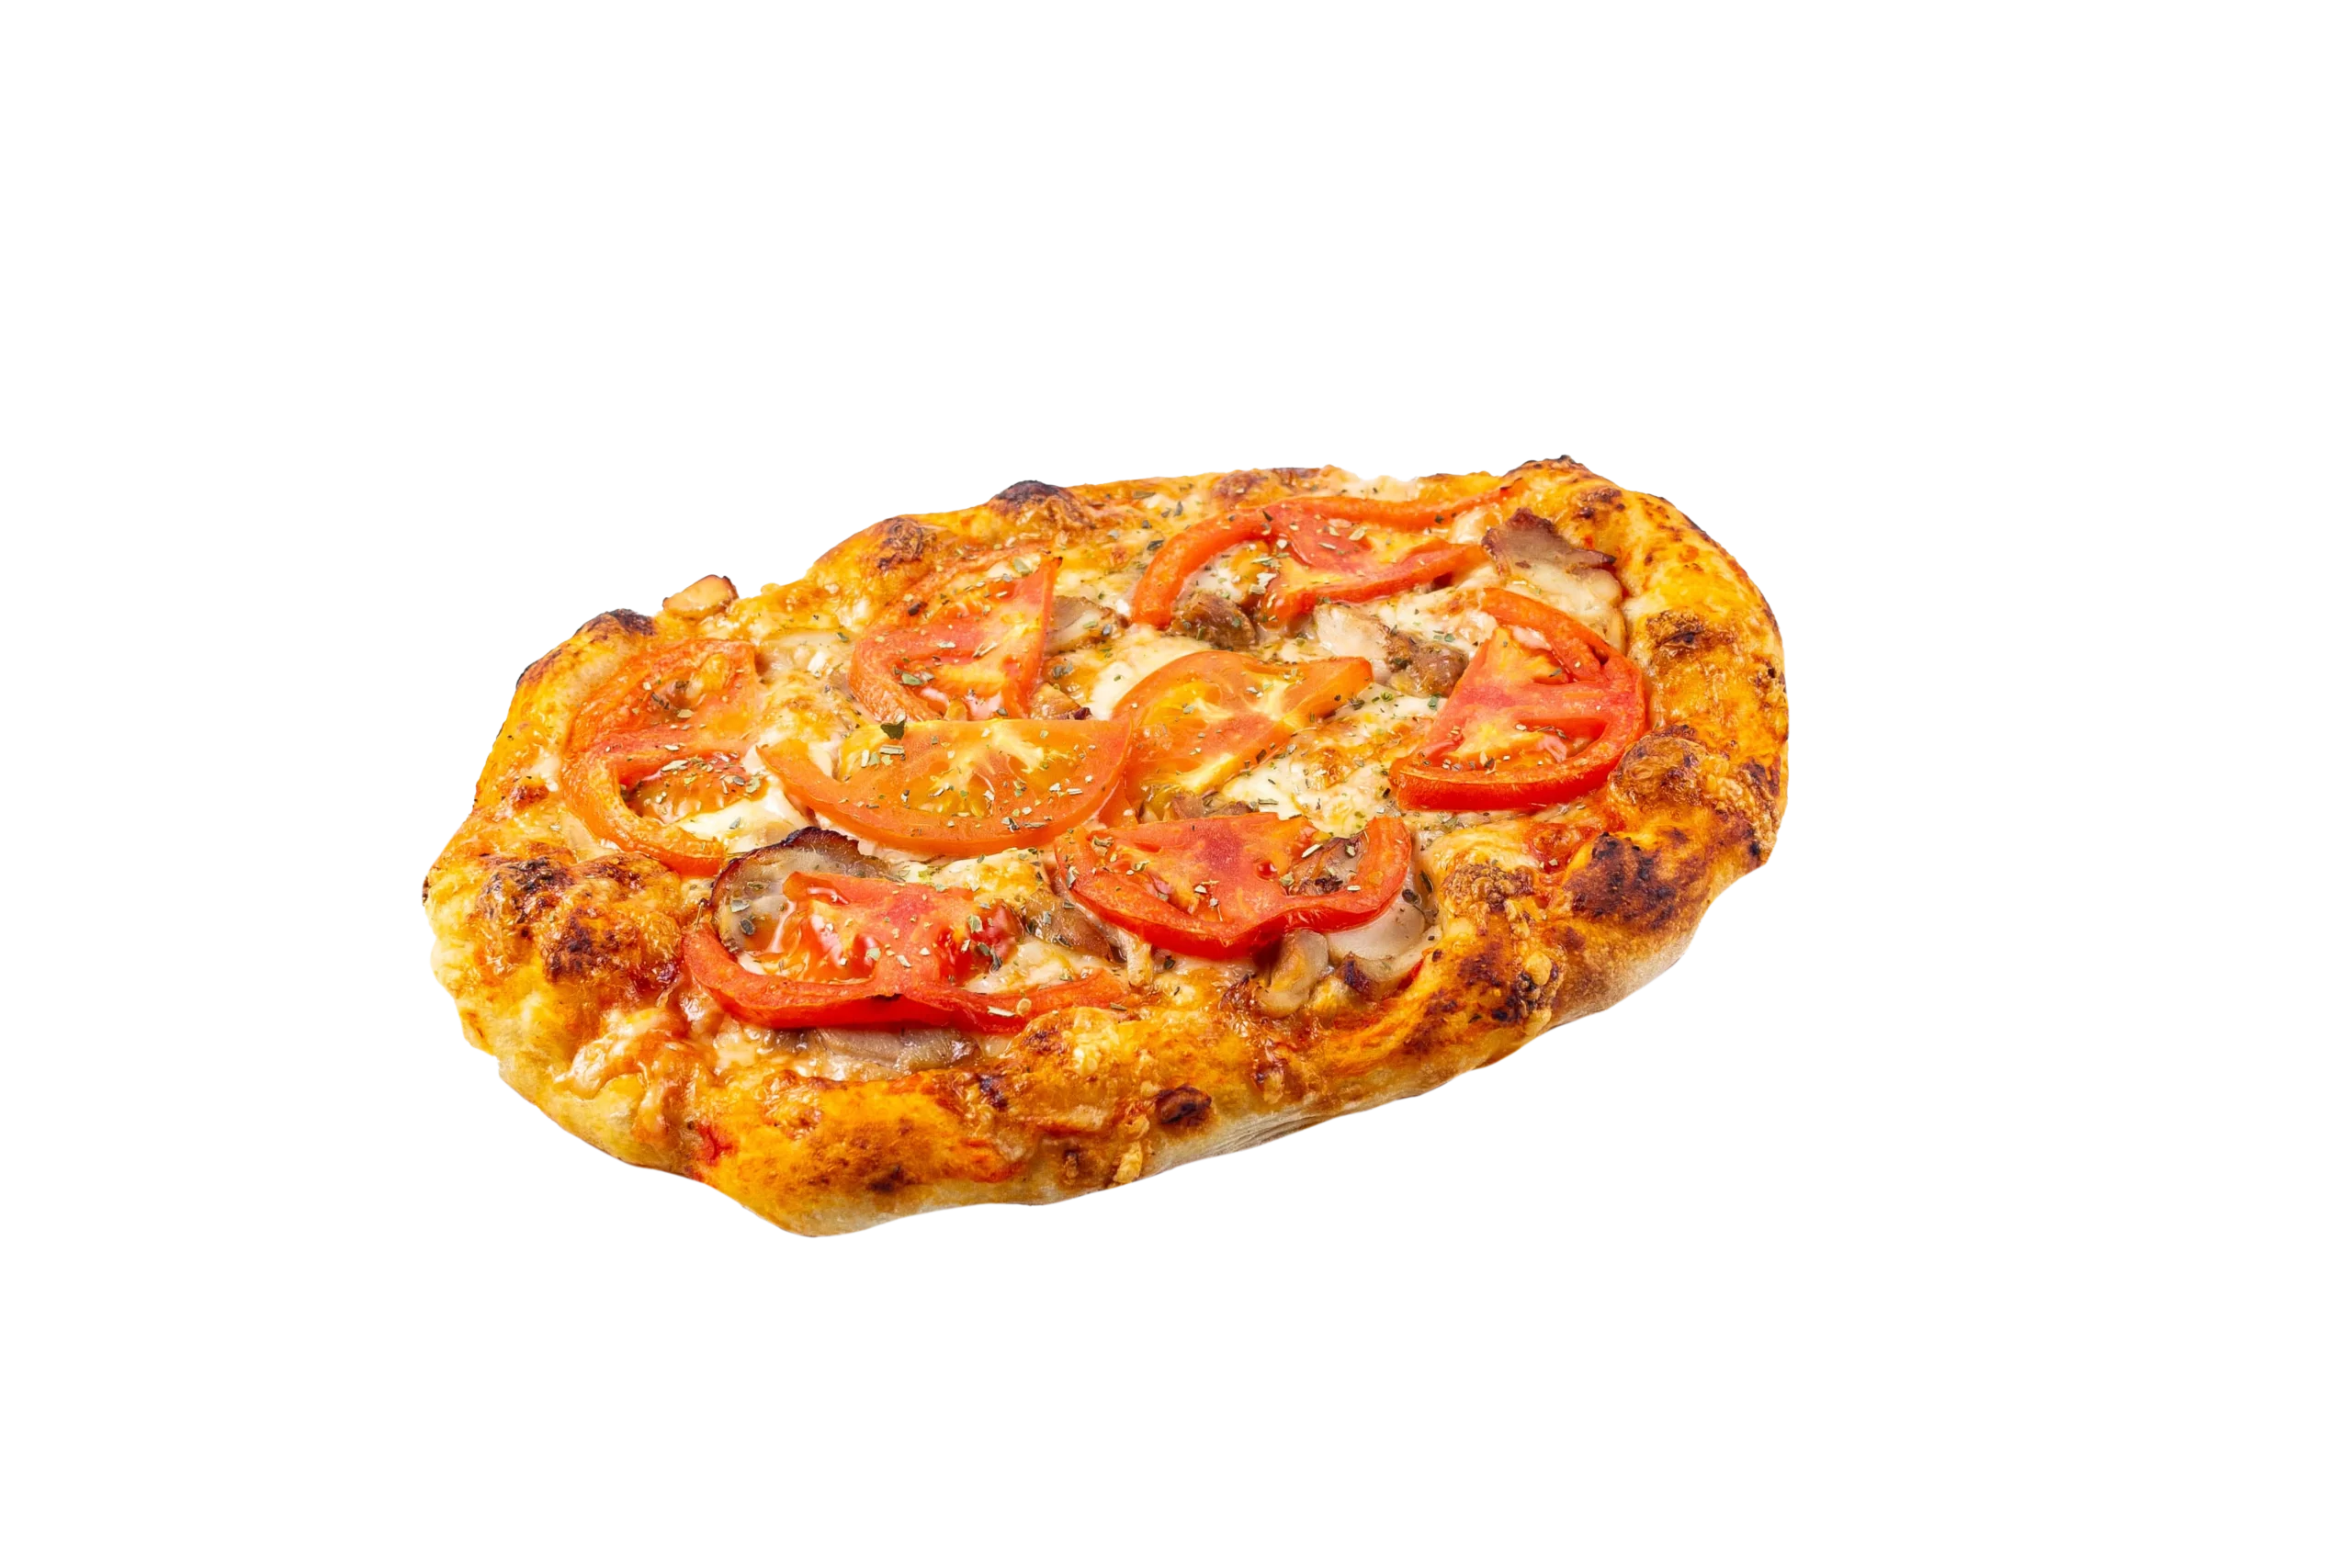 римское тесто для пиццы купить в москве фото 61